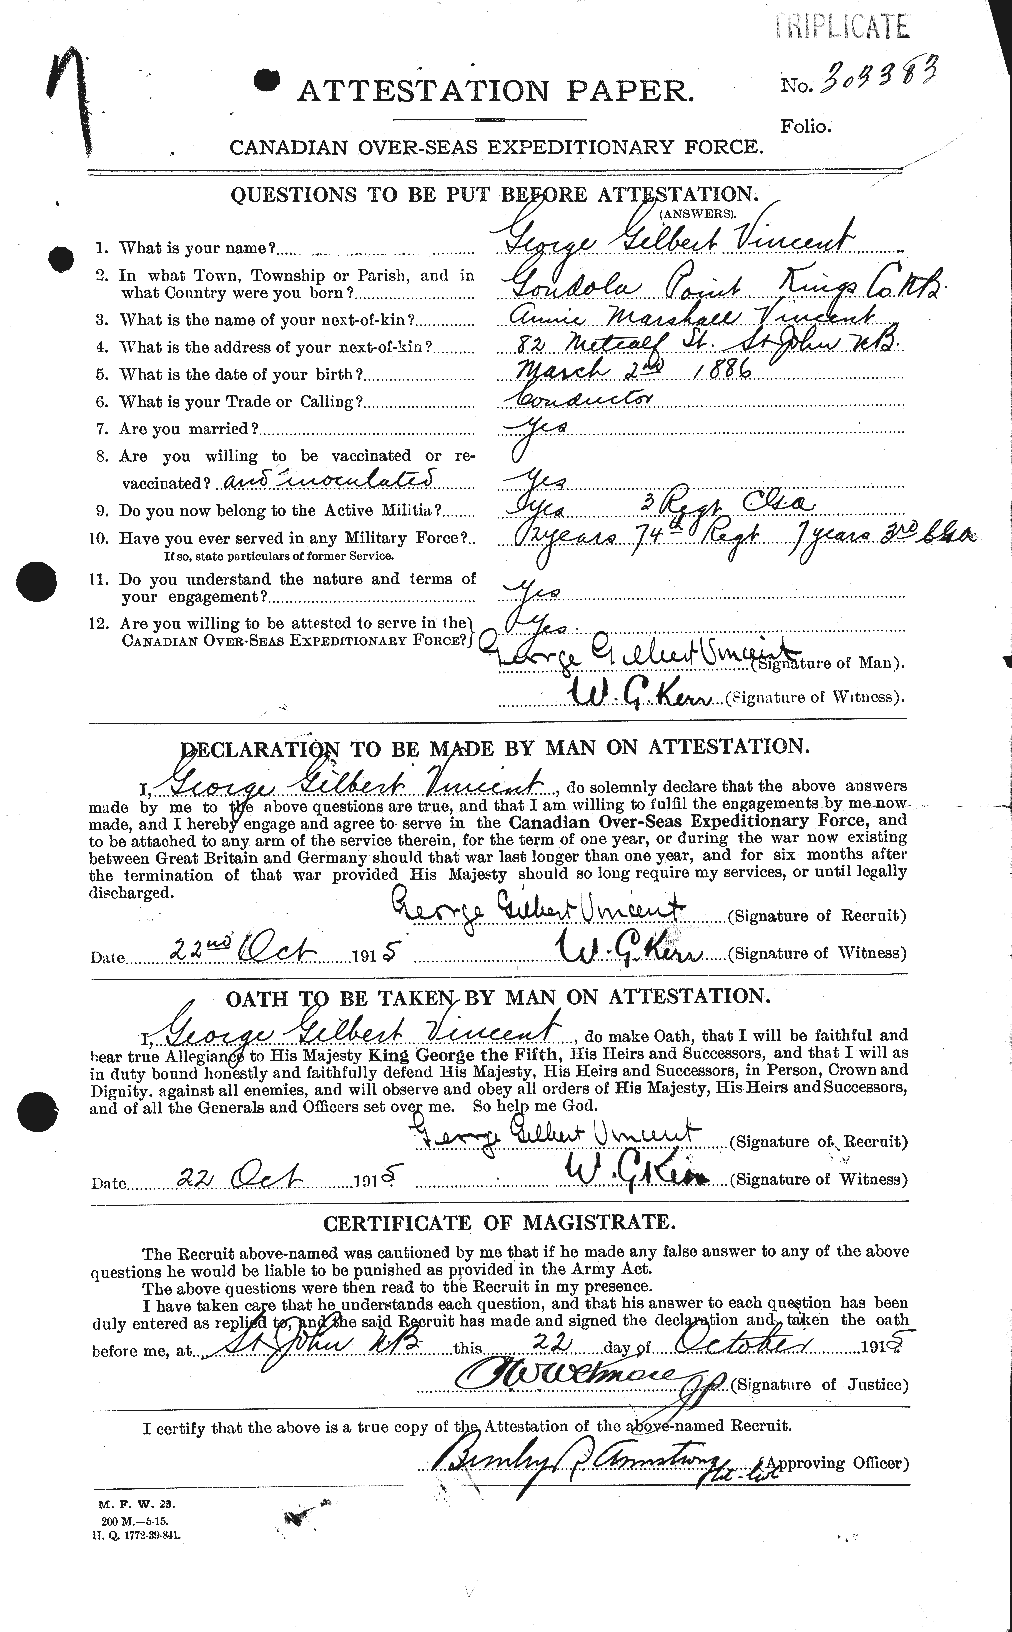 Dossiers du Personnel de la Première Guerre mondiale - CEC 656419a